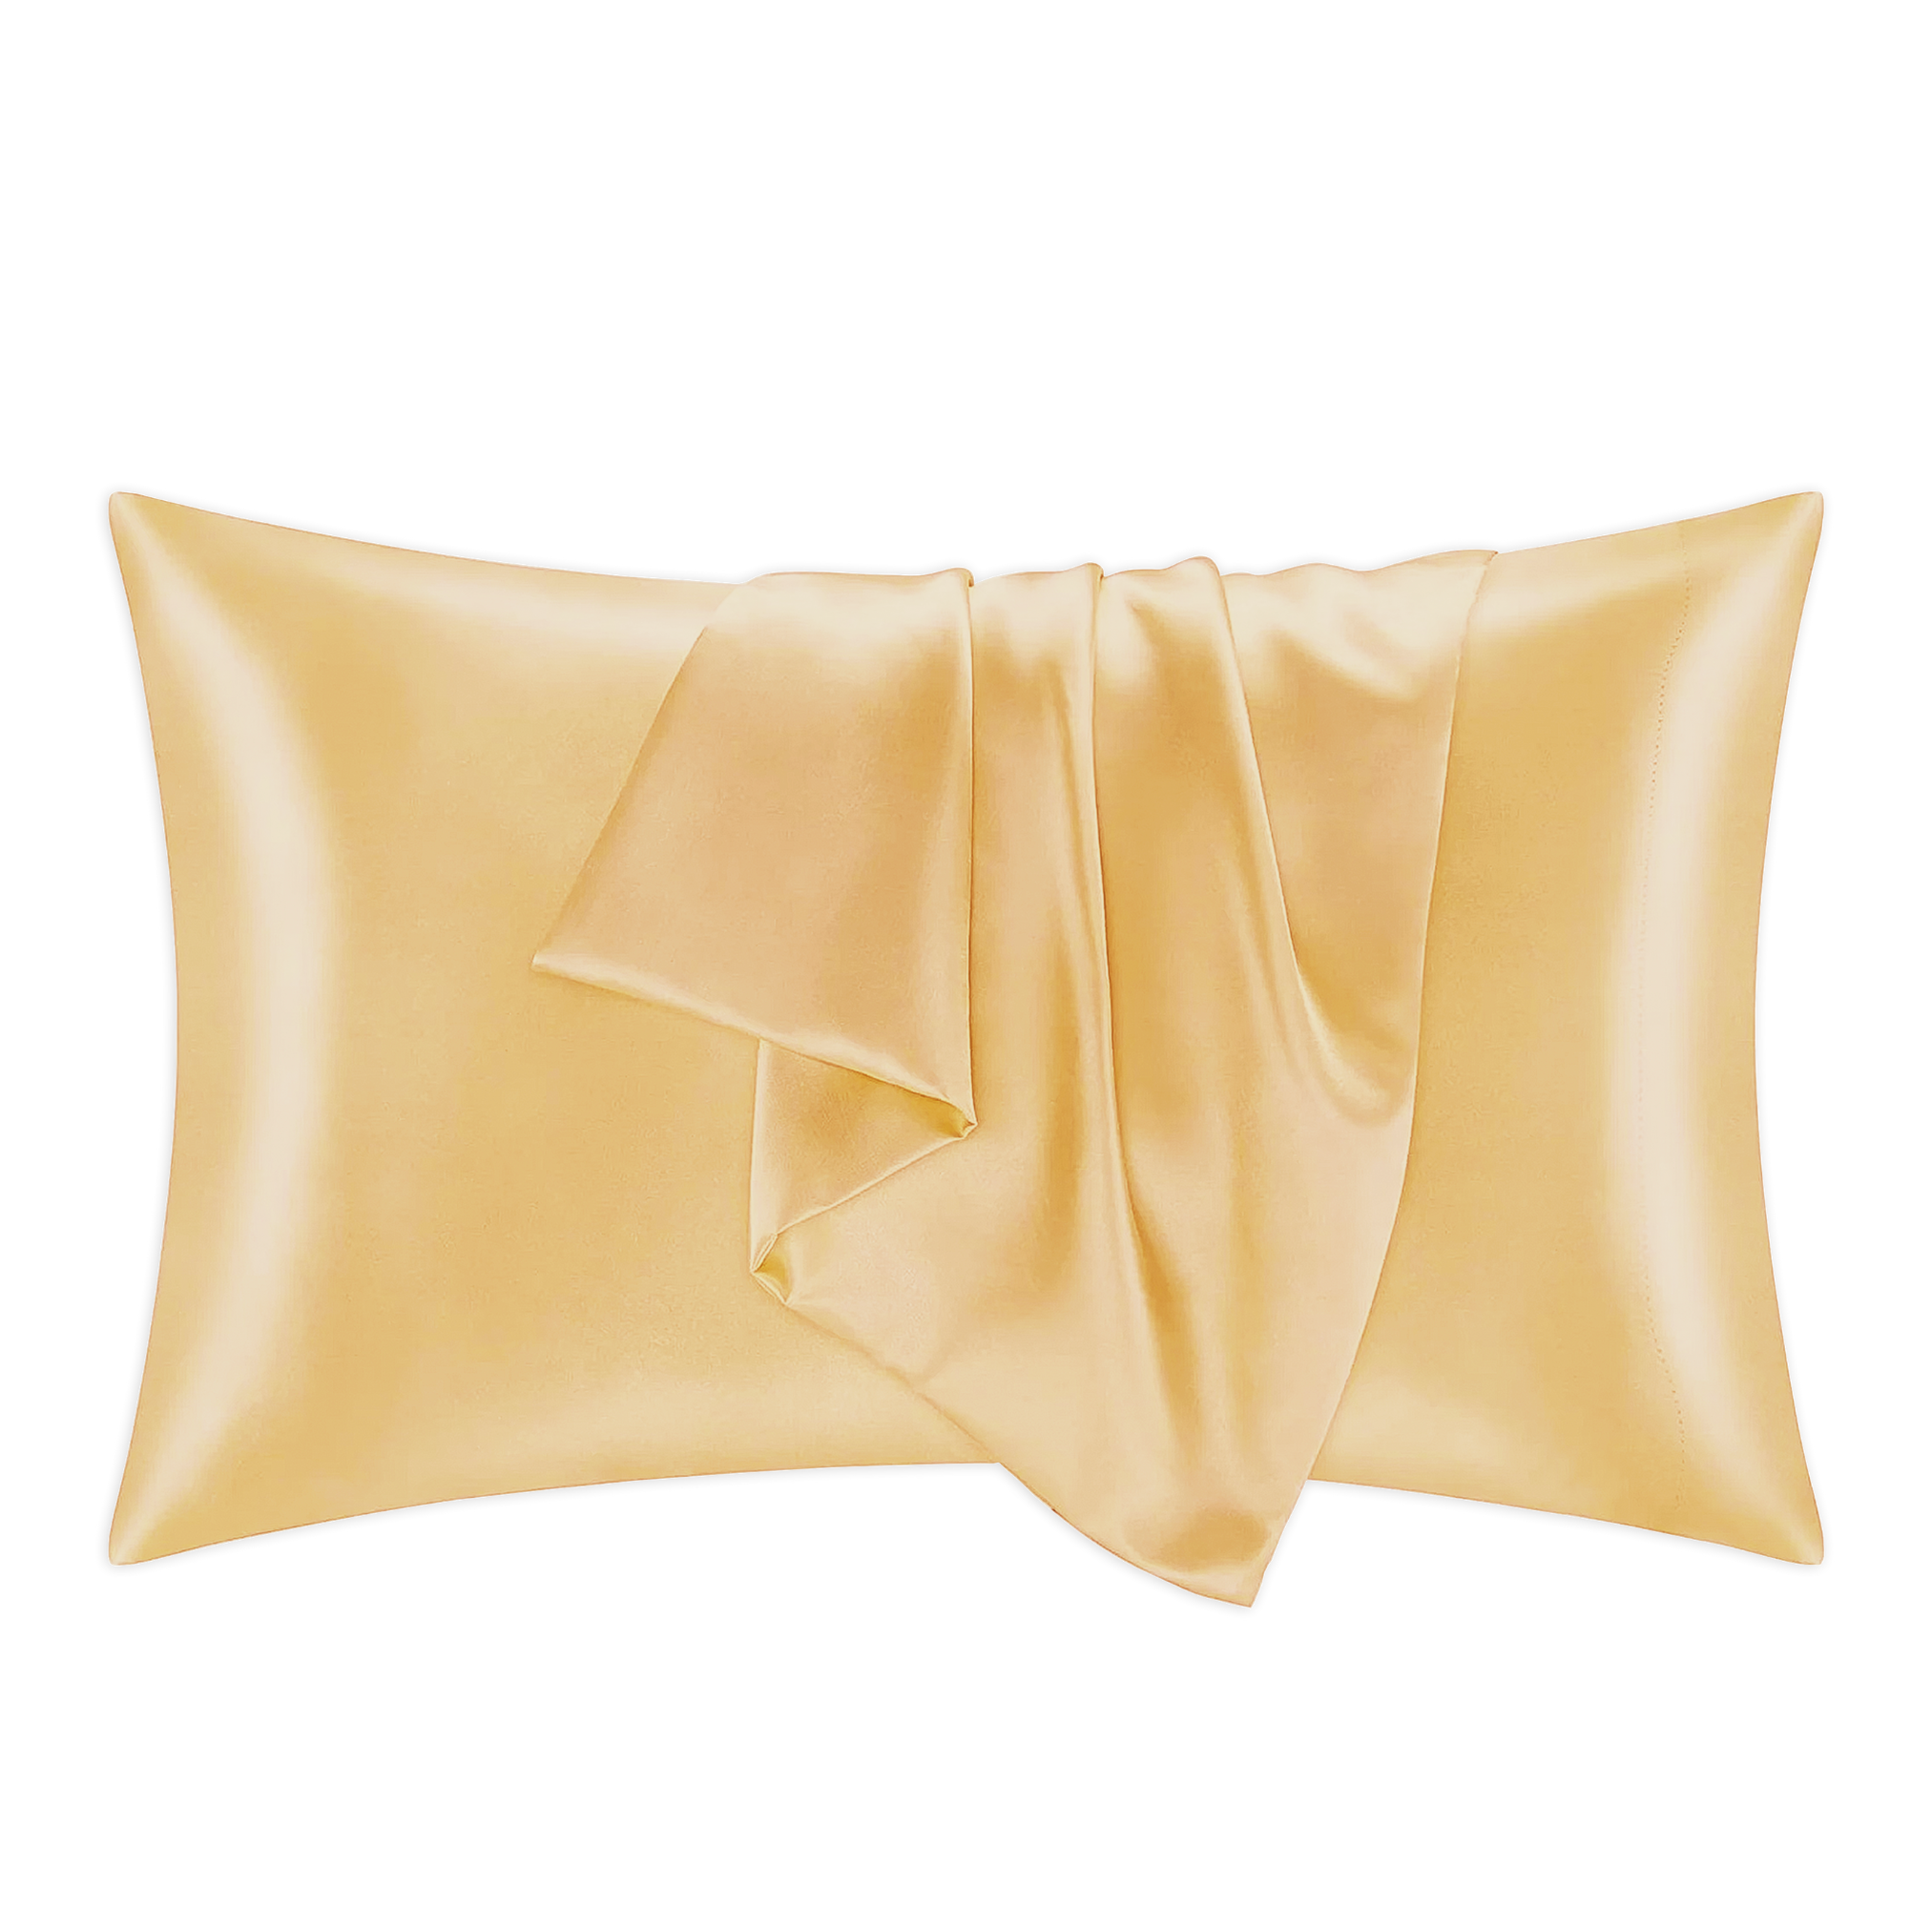 Gold Mulberry Silk Pillowcase - 100% Pure, Luxurious Sleep Comfort